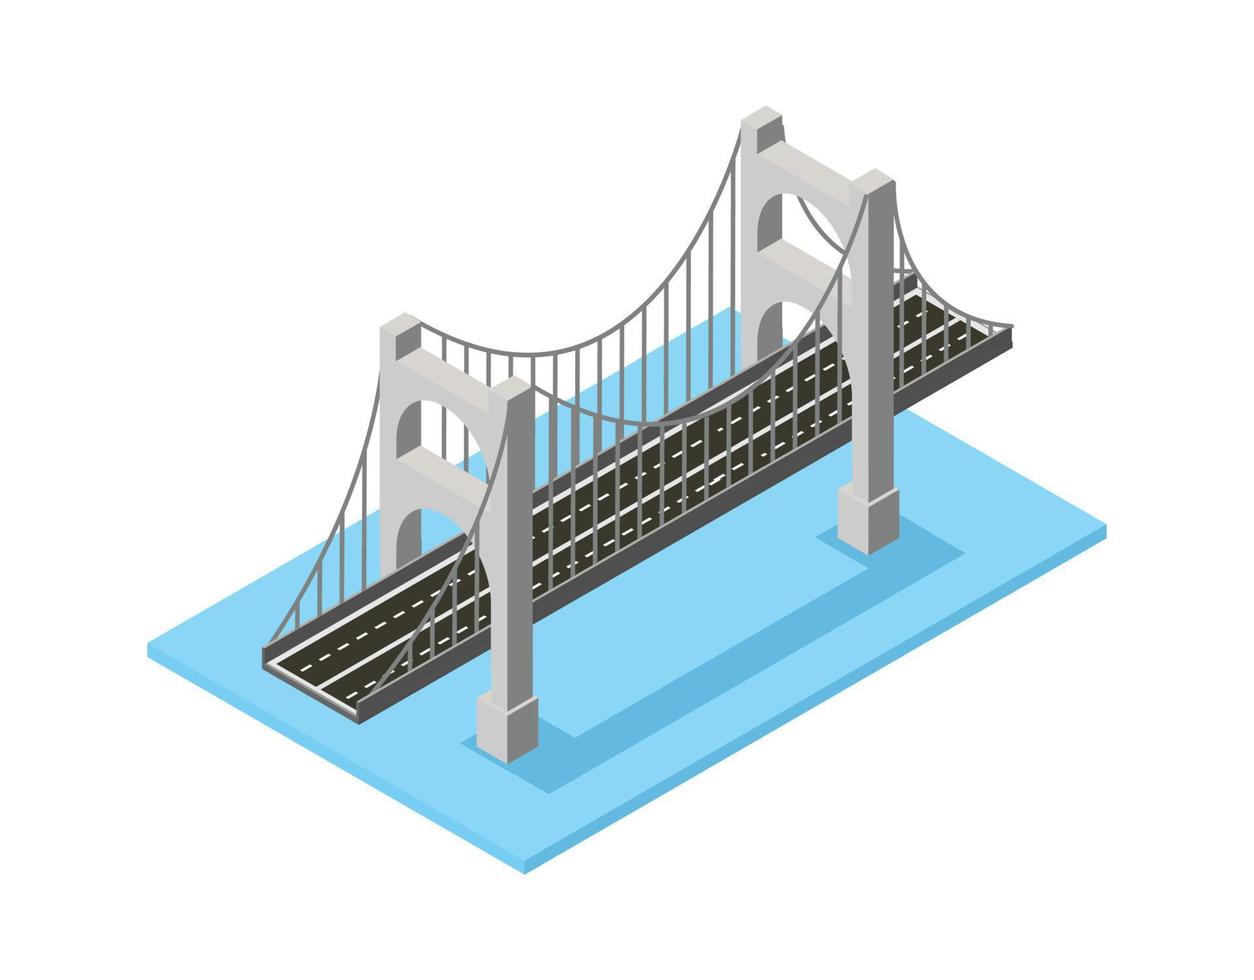 el puente skyway de la infraestructura urbana es isométrico para juegos, aplicaciones de inspiración y creatividad. adecuado para diagramas, infografías y otros recursos gráficos vector